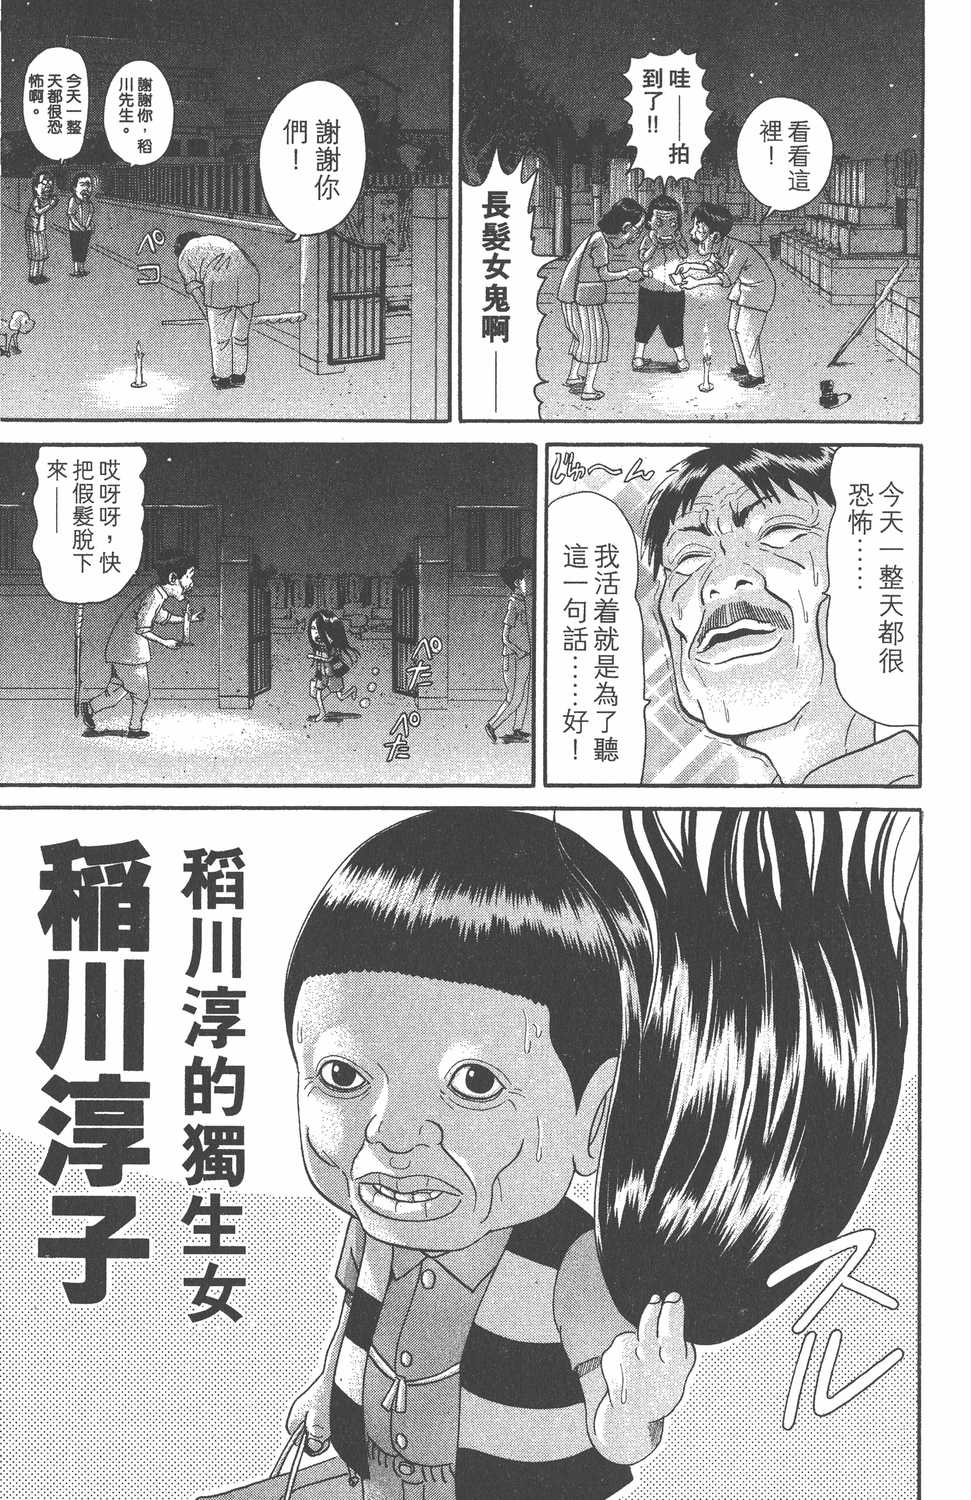 元祖 浦安铁筋家族漫画单行本第18集 漫画db